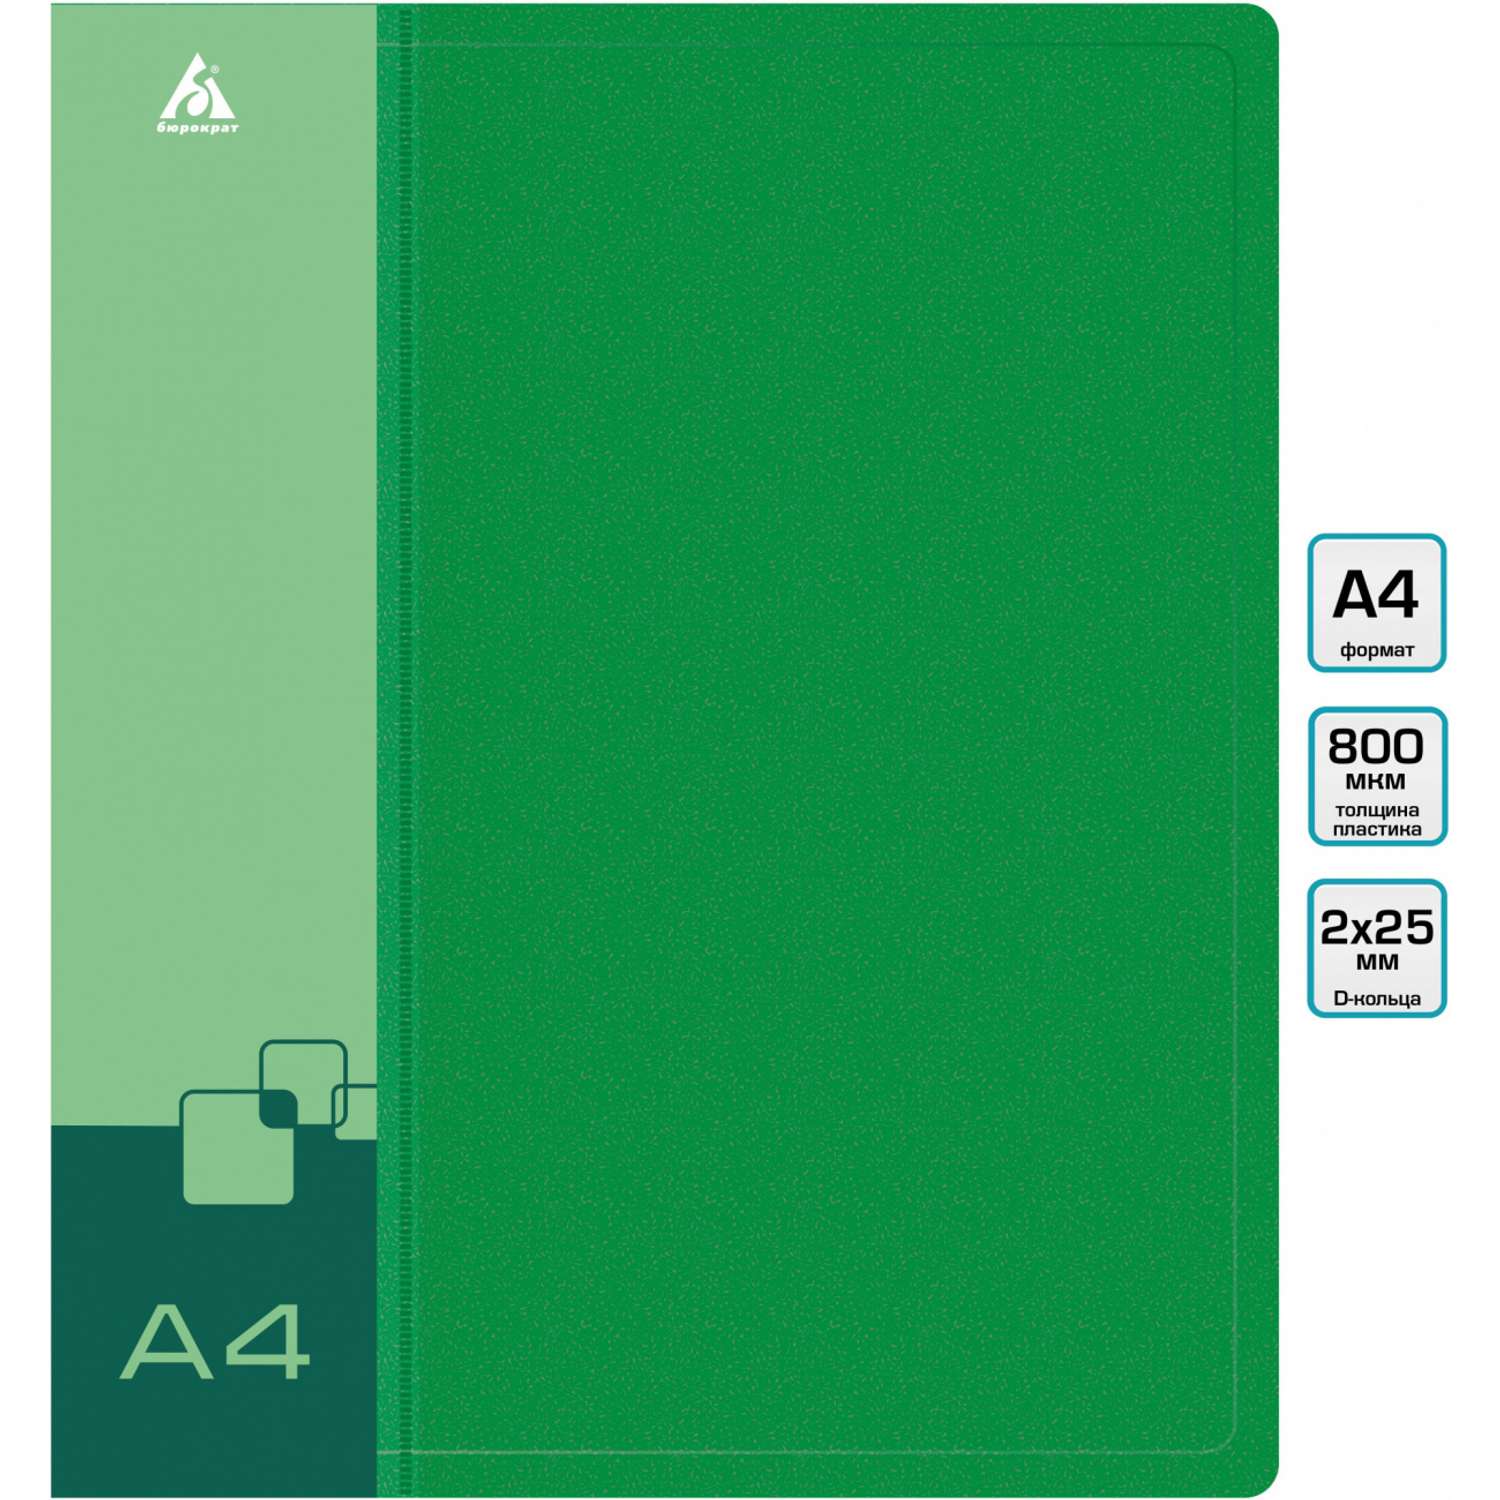 Папка на кольцах Бюрократ 2шт колец D-образные A4 40мм корешок пластик 0.8мм зеленый - фото 1